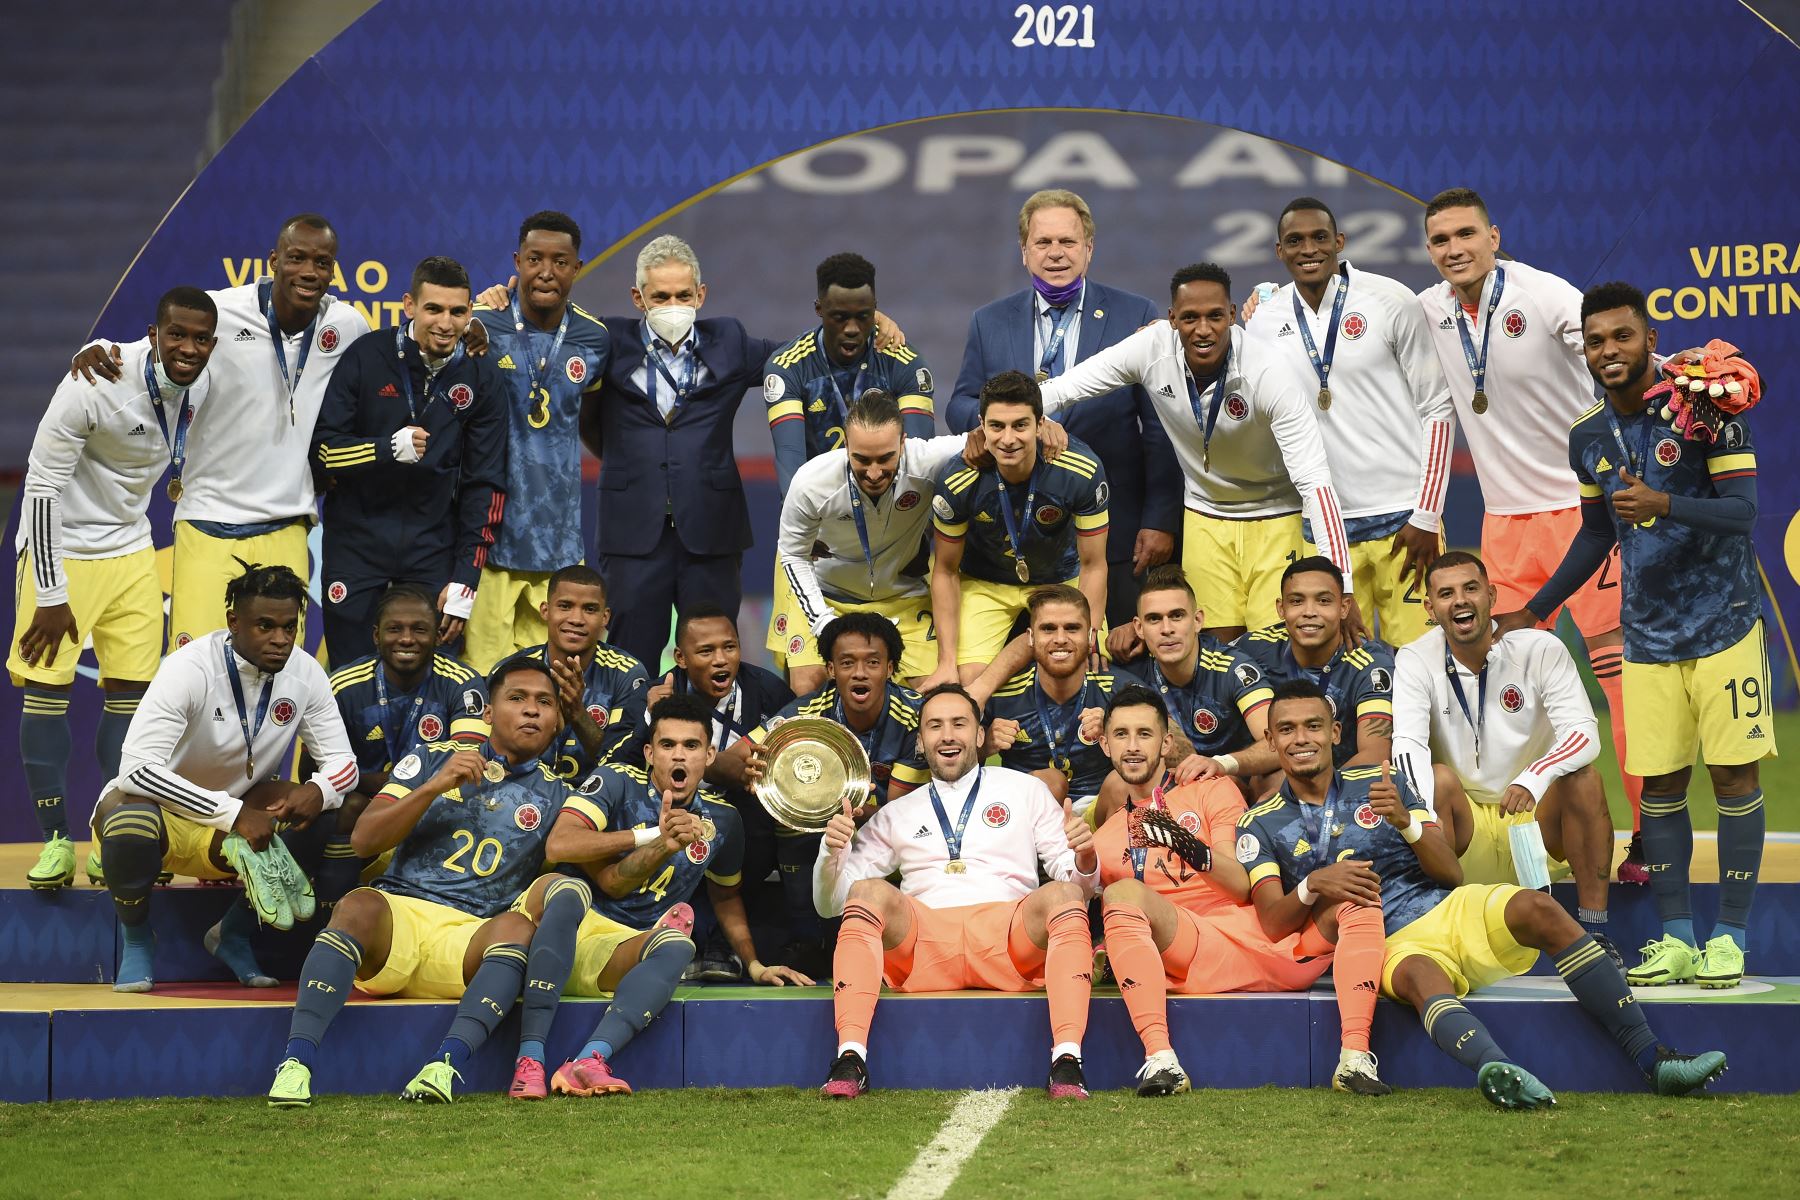 La selección de Colombia posa en el podio con sus medallas y trofeo luego de derrotar a Perú 3-2 en el partido por el tercer lugar de la Copa América 2021, en el Estadio Mane Garrincha de Brasilia. Foto: AFP